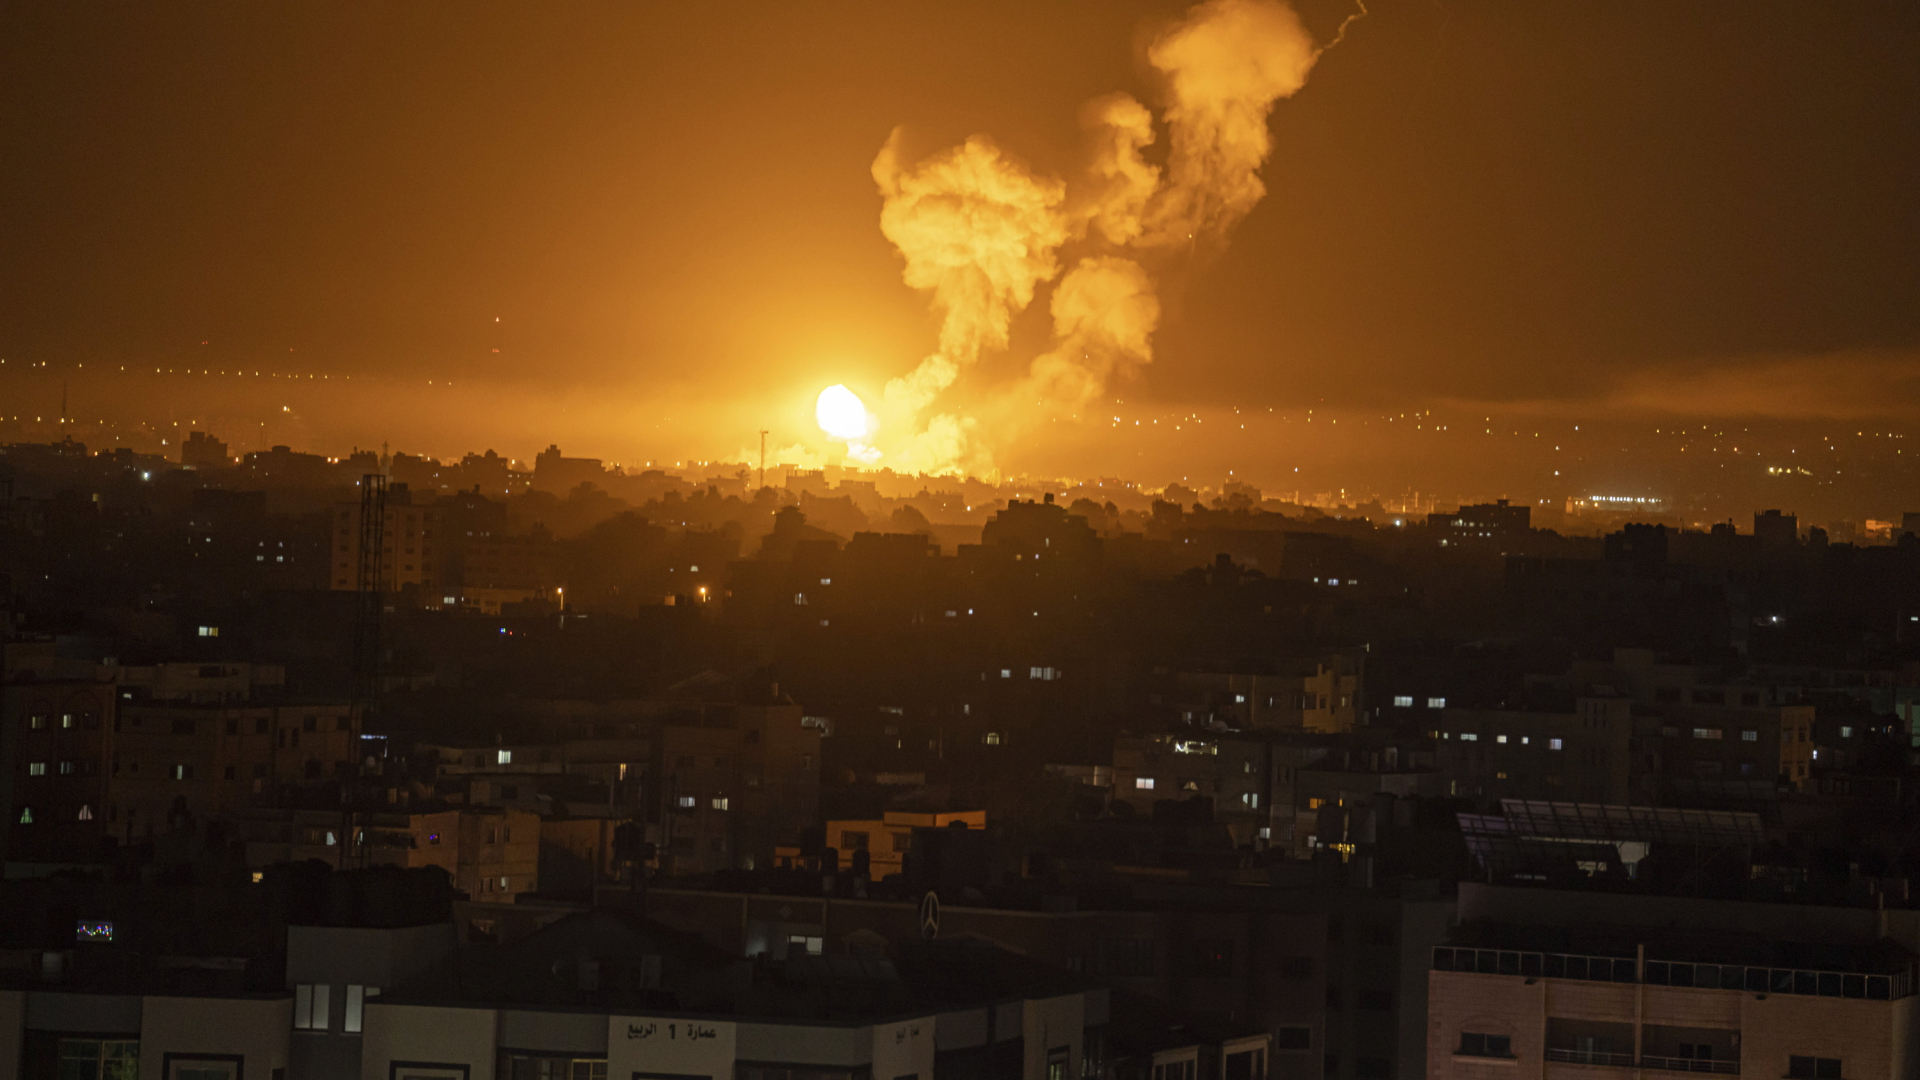 Bilder zeigen israelische Luftangriffe im Gazastreifen.